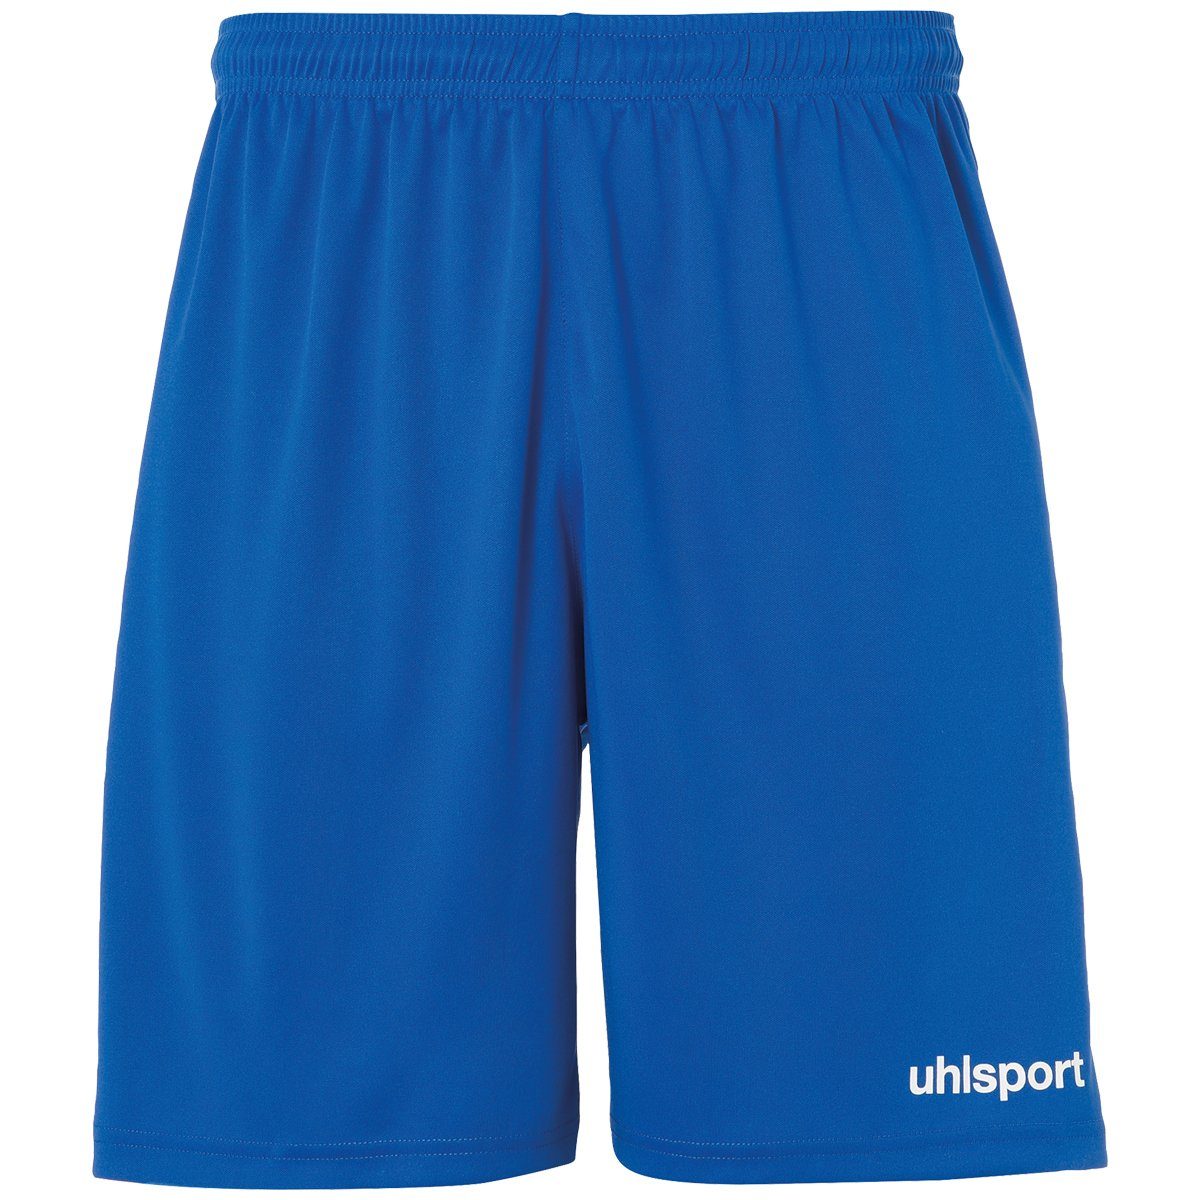 uhlsport Shorts uhlsport Shorts azurblau